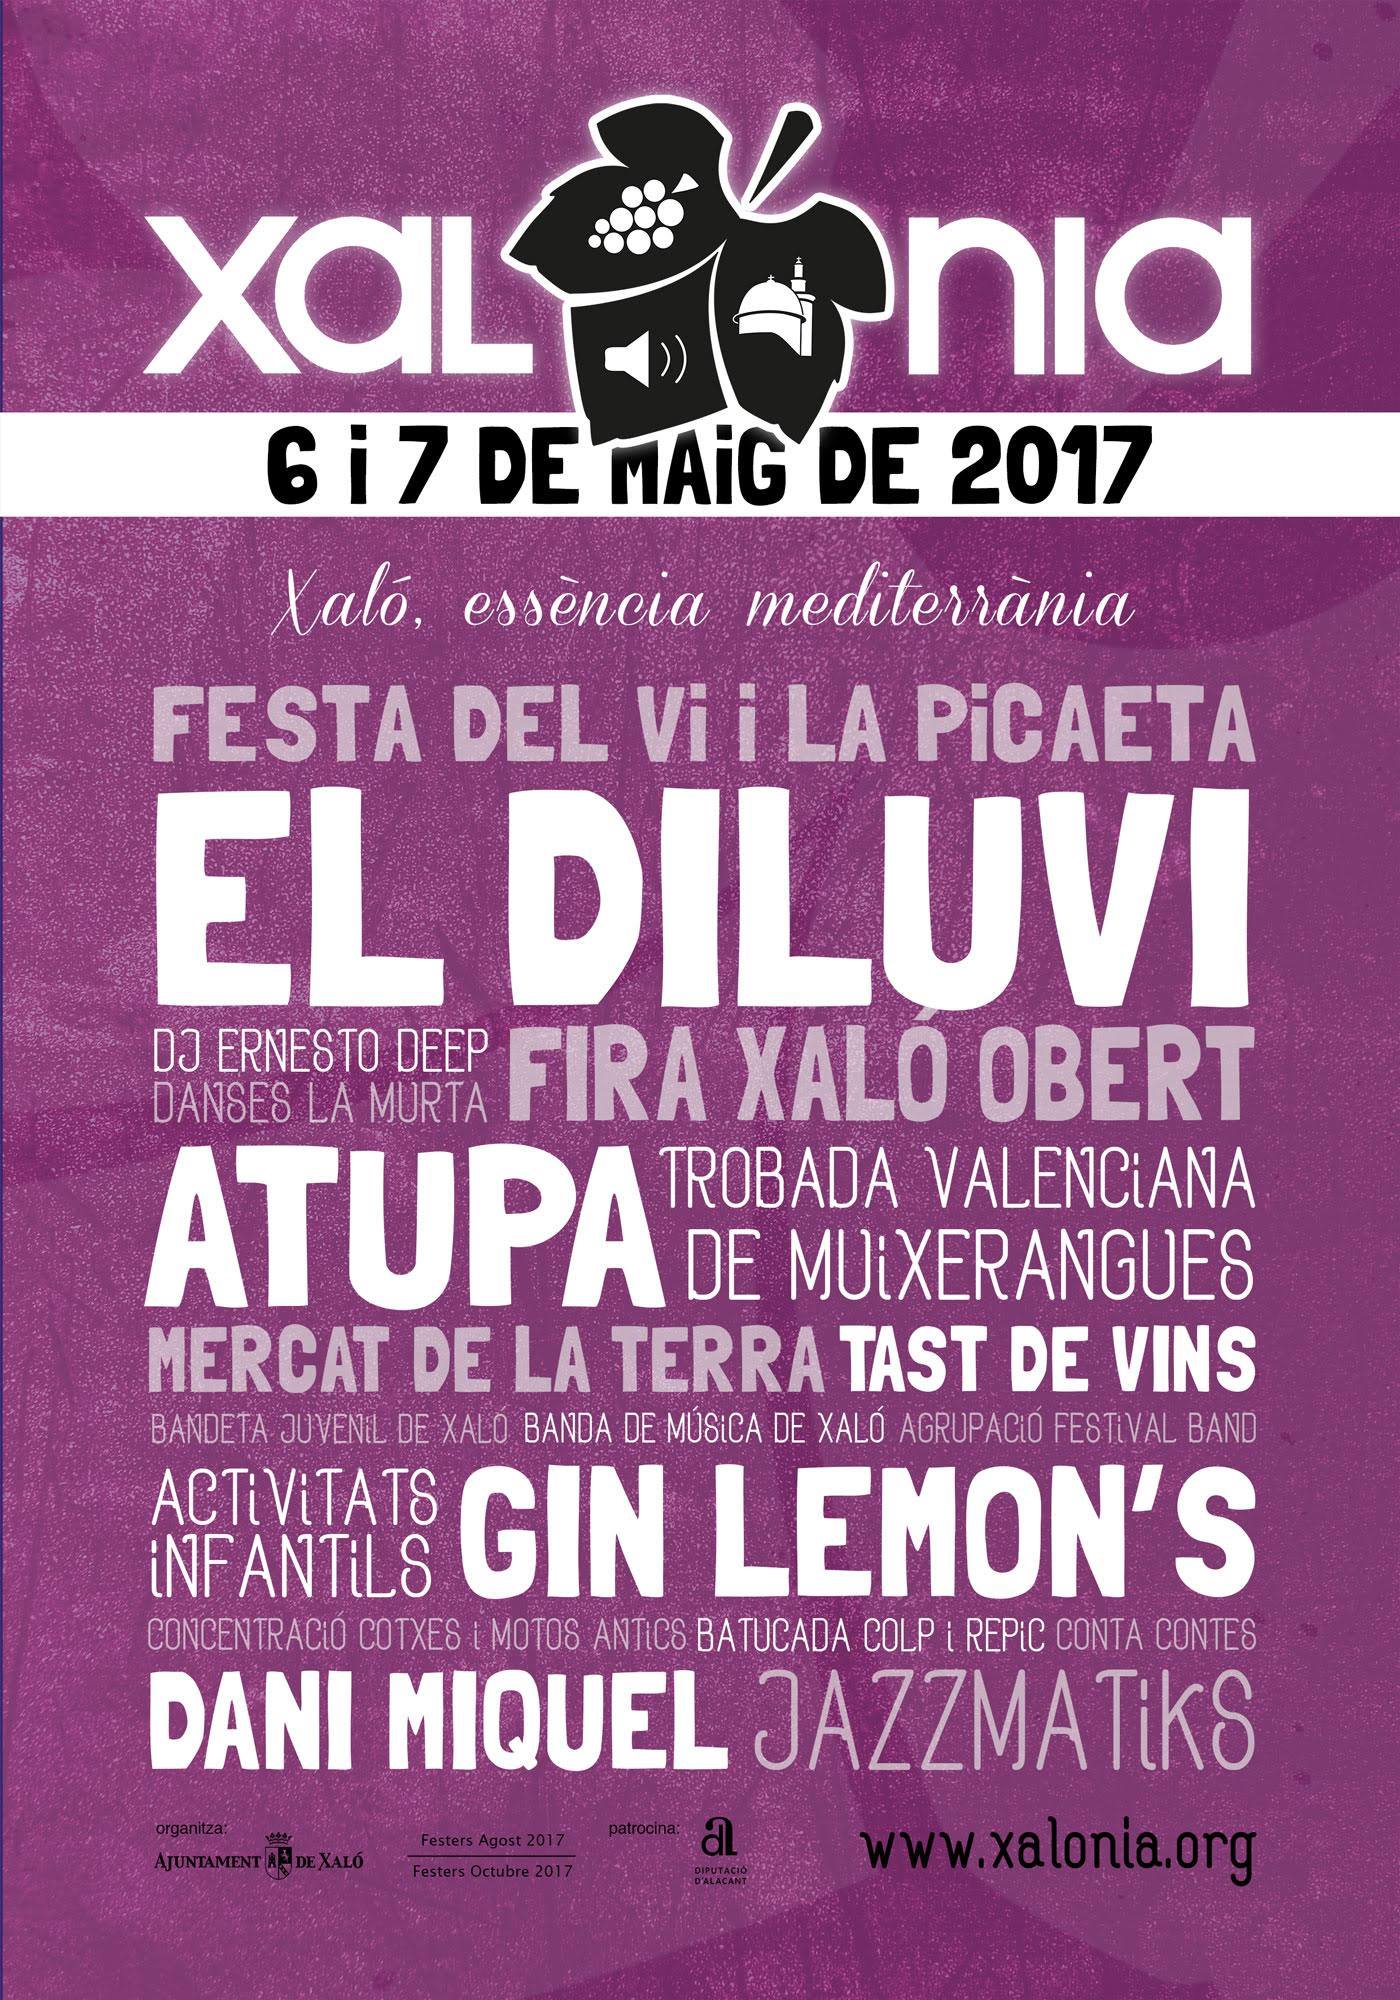 Xalonia festival 2017